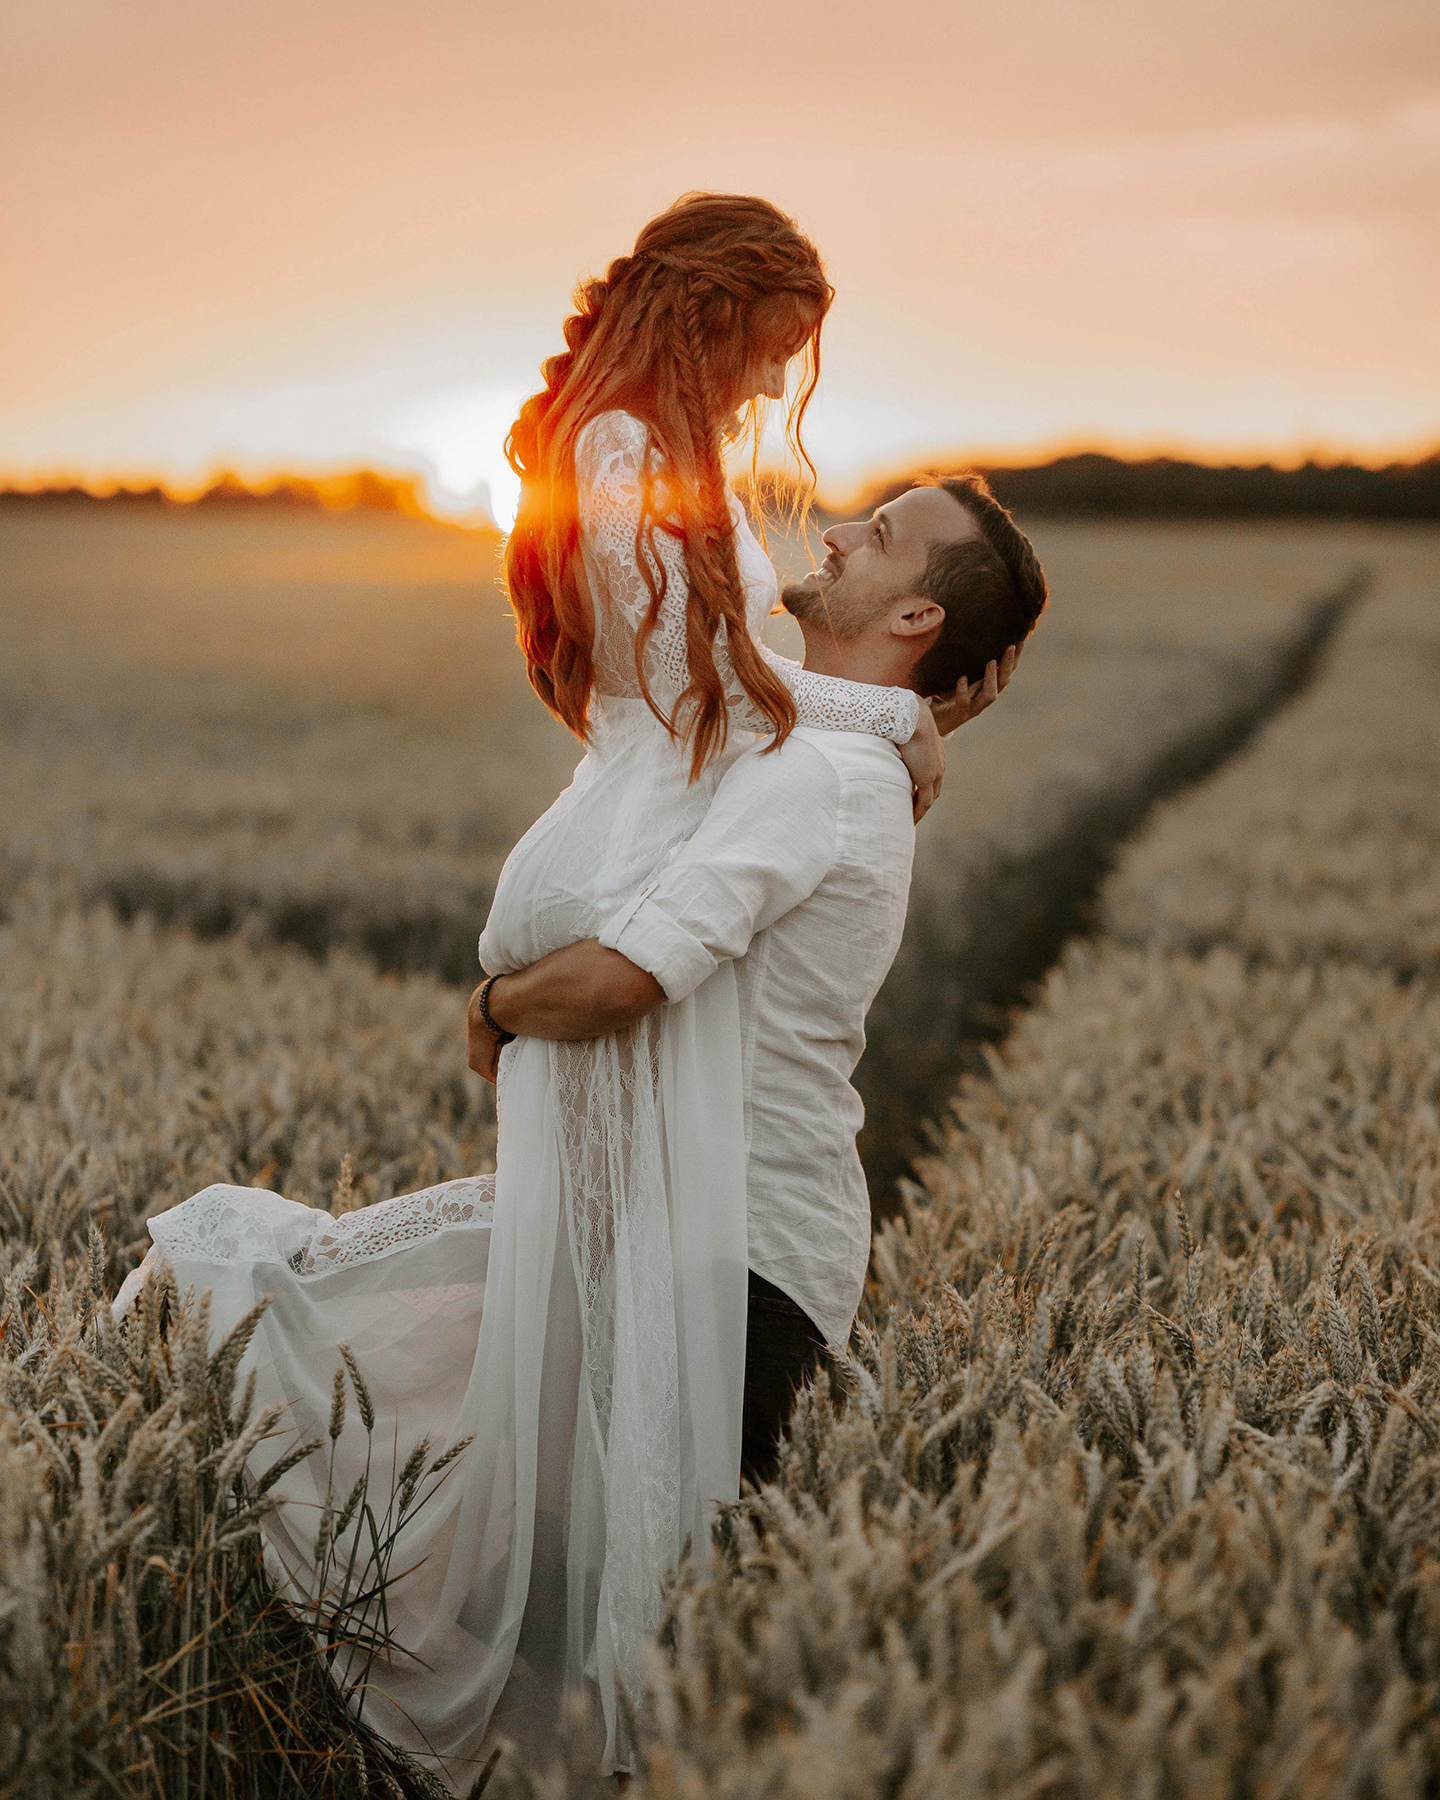 Brautpaar wird in romantischer Stimmung bei Abendsonne im Kornfeld fotografiert